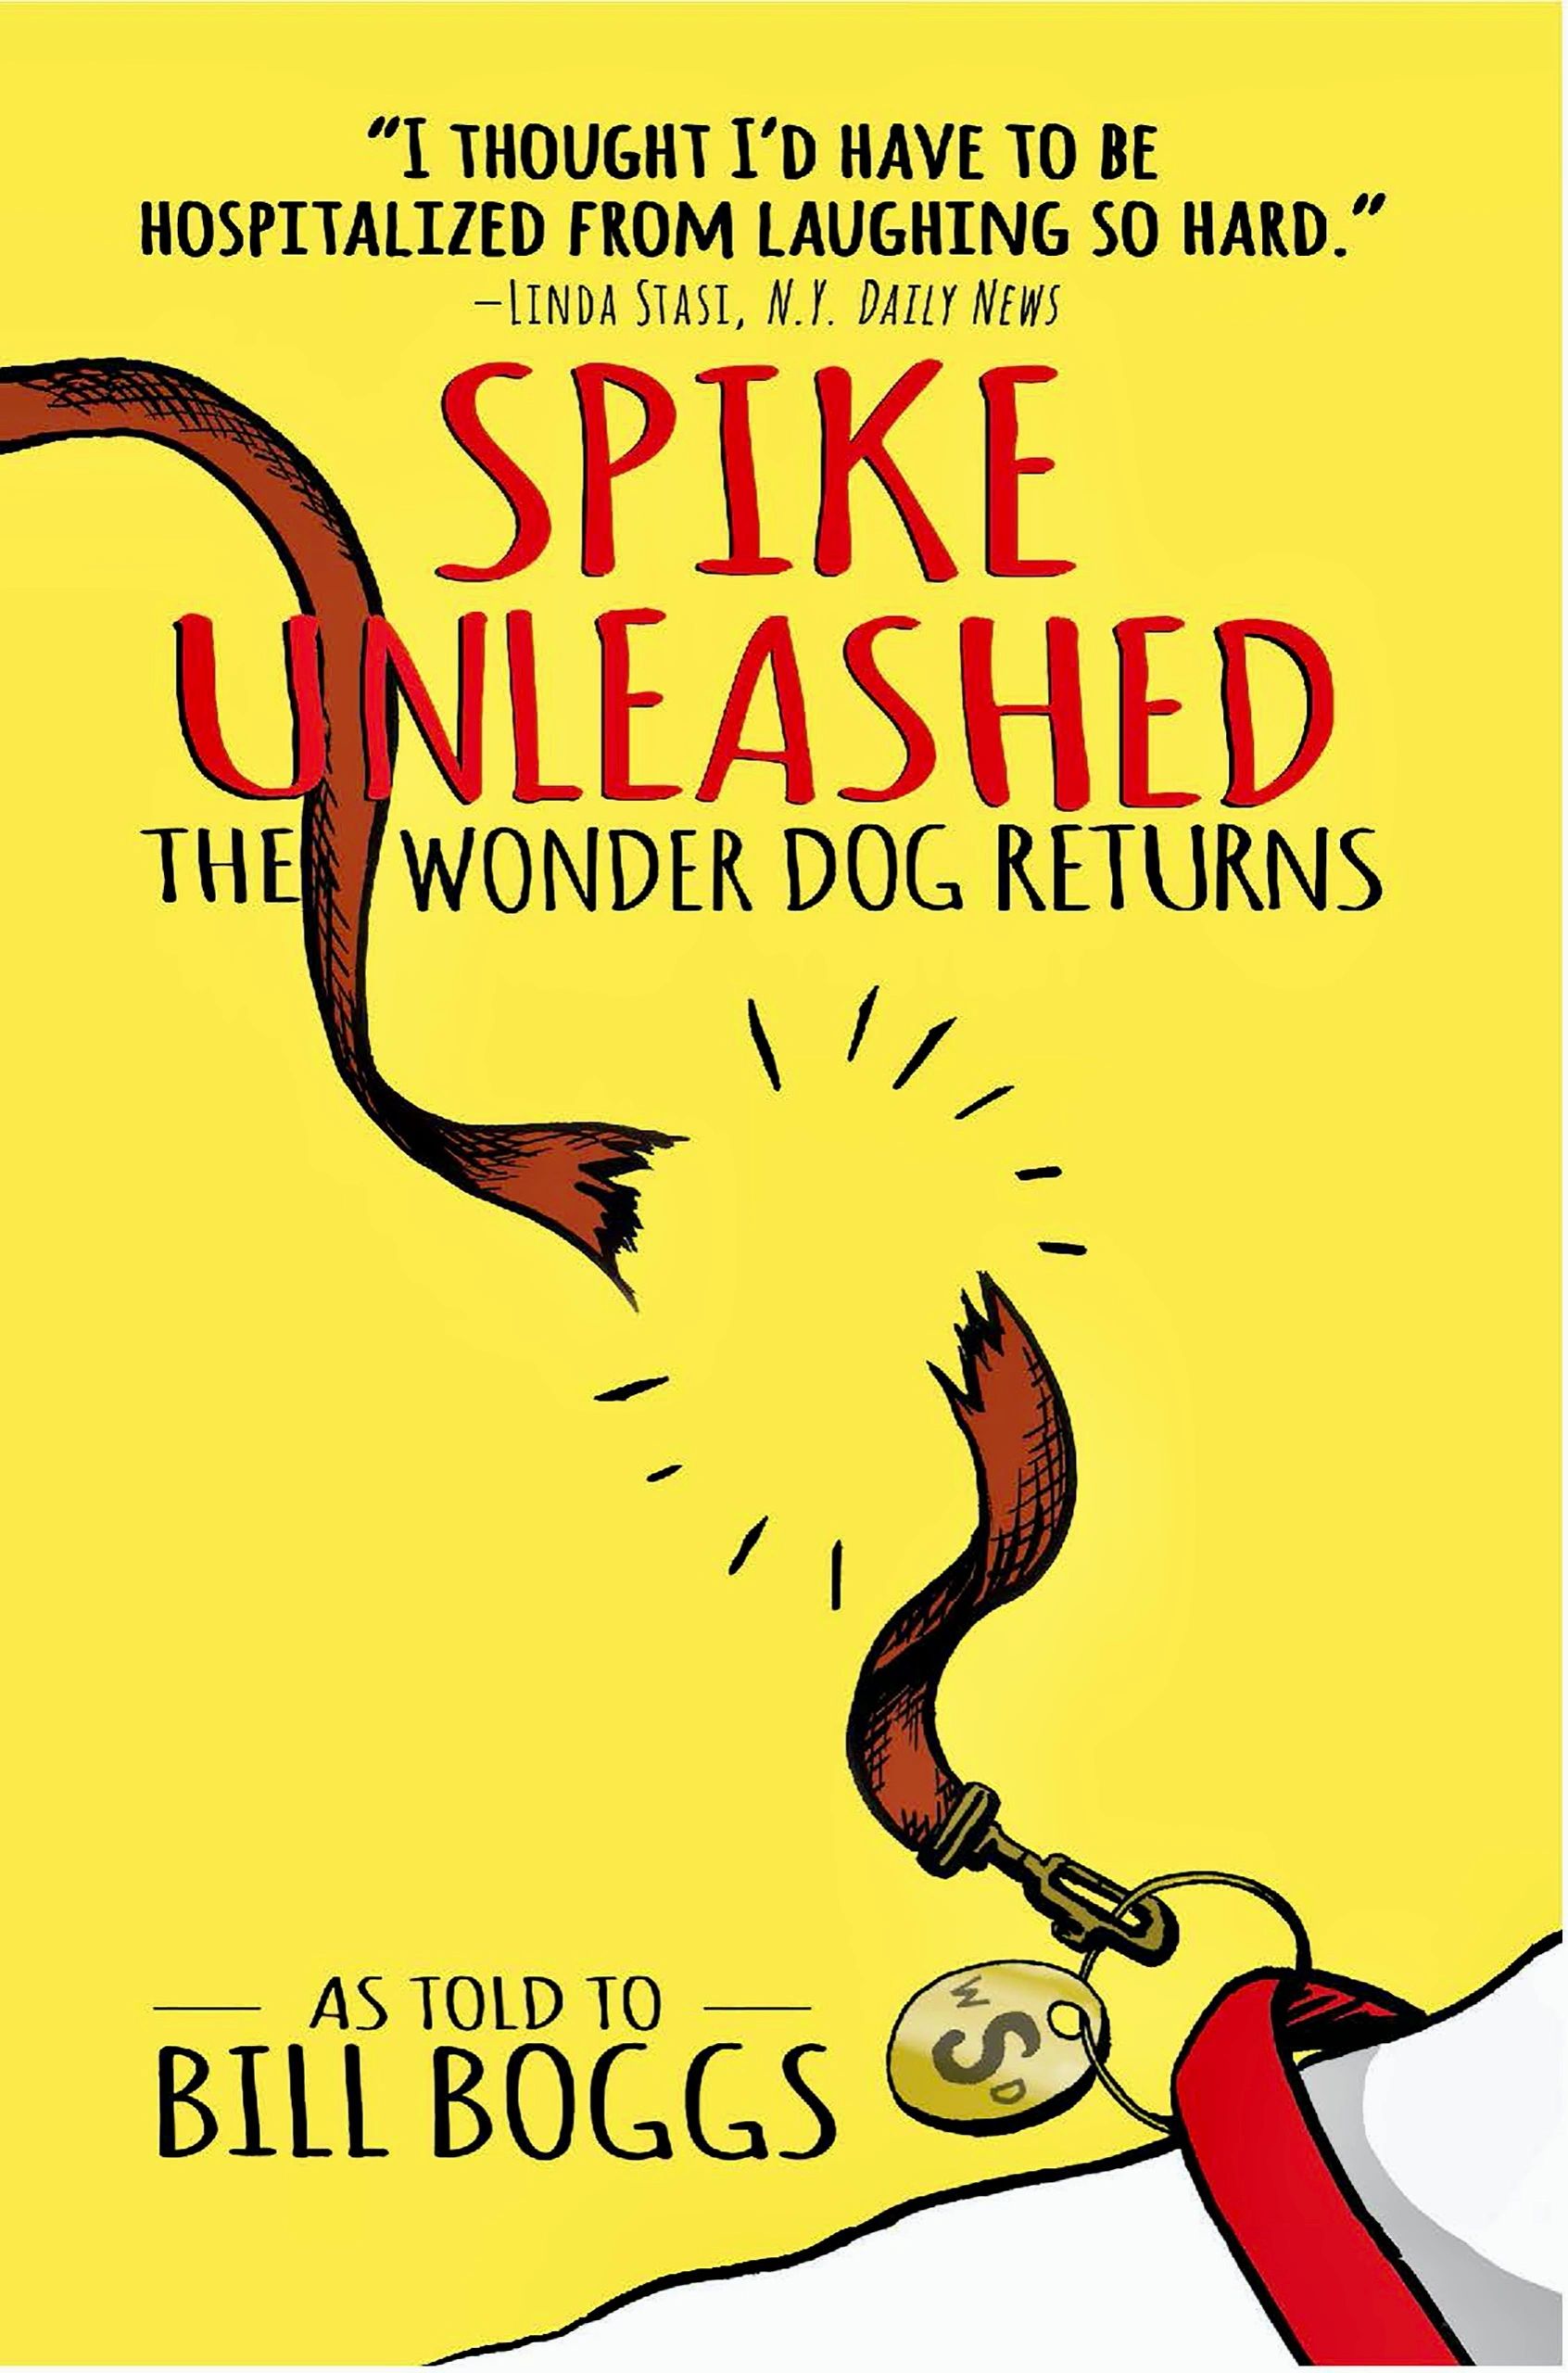 The Adventures of Spike The Wonder Dog - Rocket Dog Blog